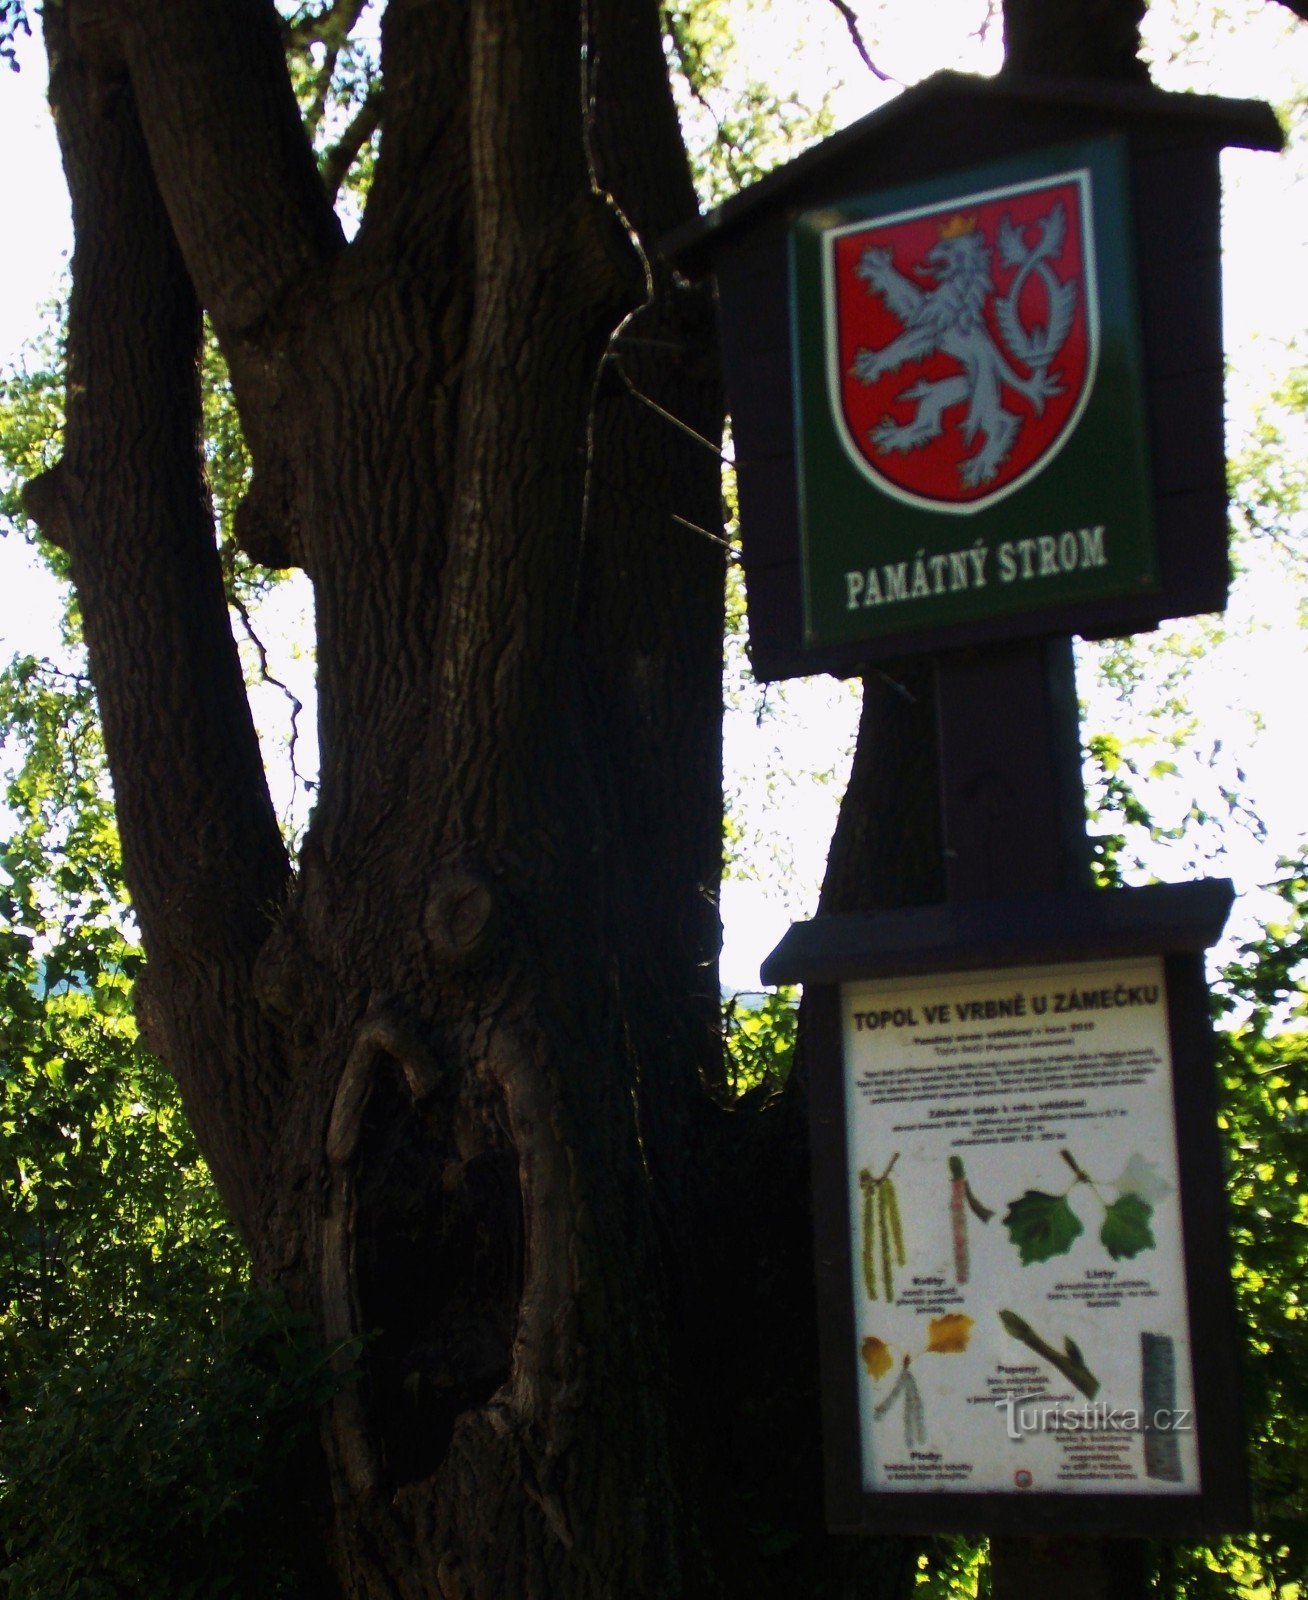 Albero commemorativo - Pioppo grigio vicino al castello di Vrbno pod Pradědem